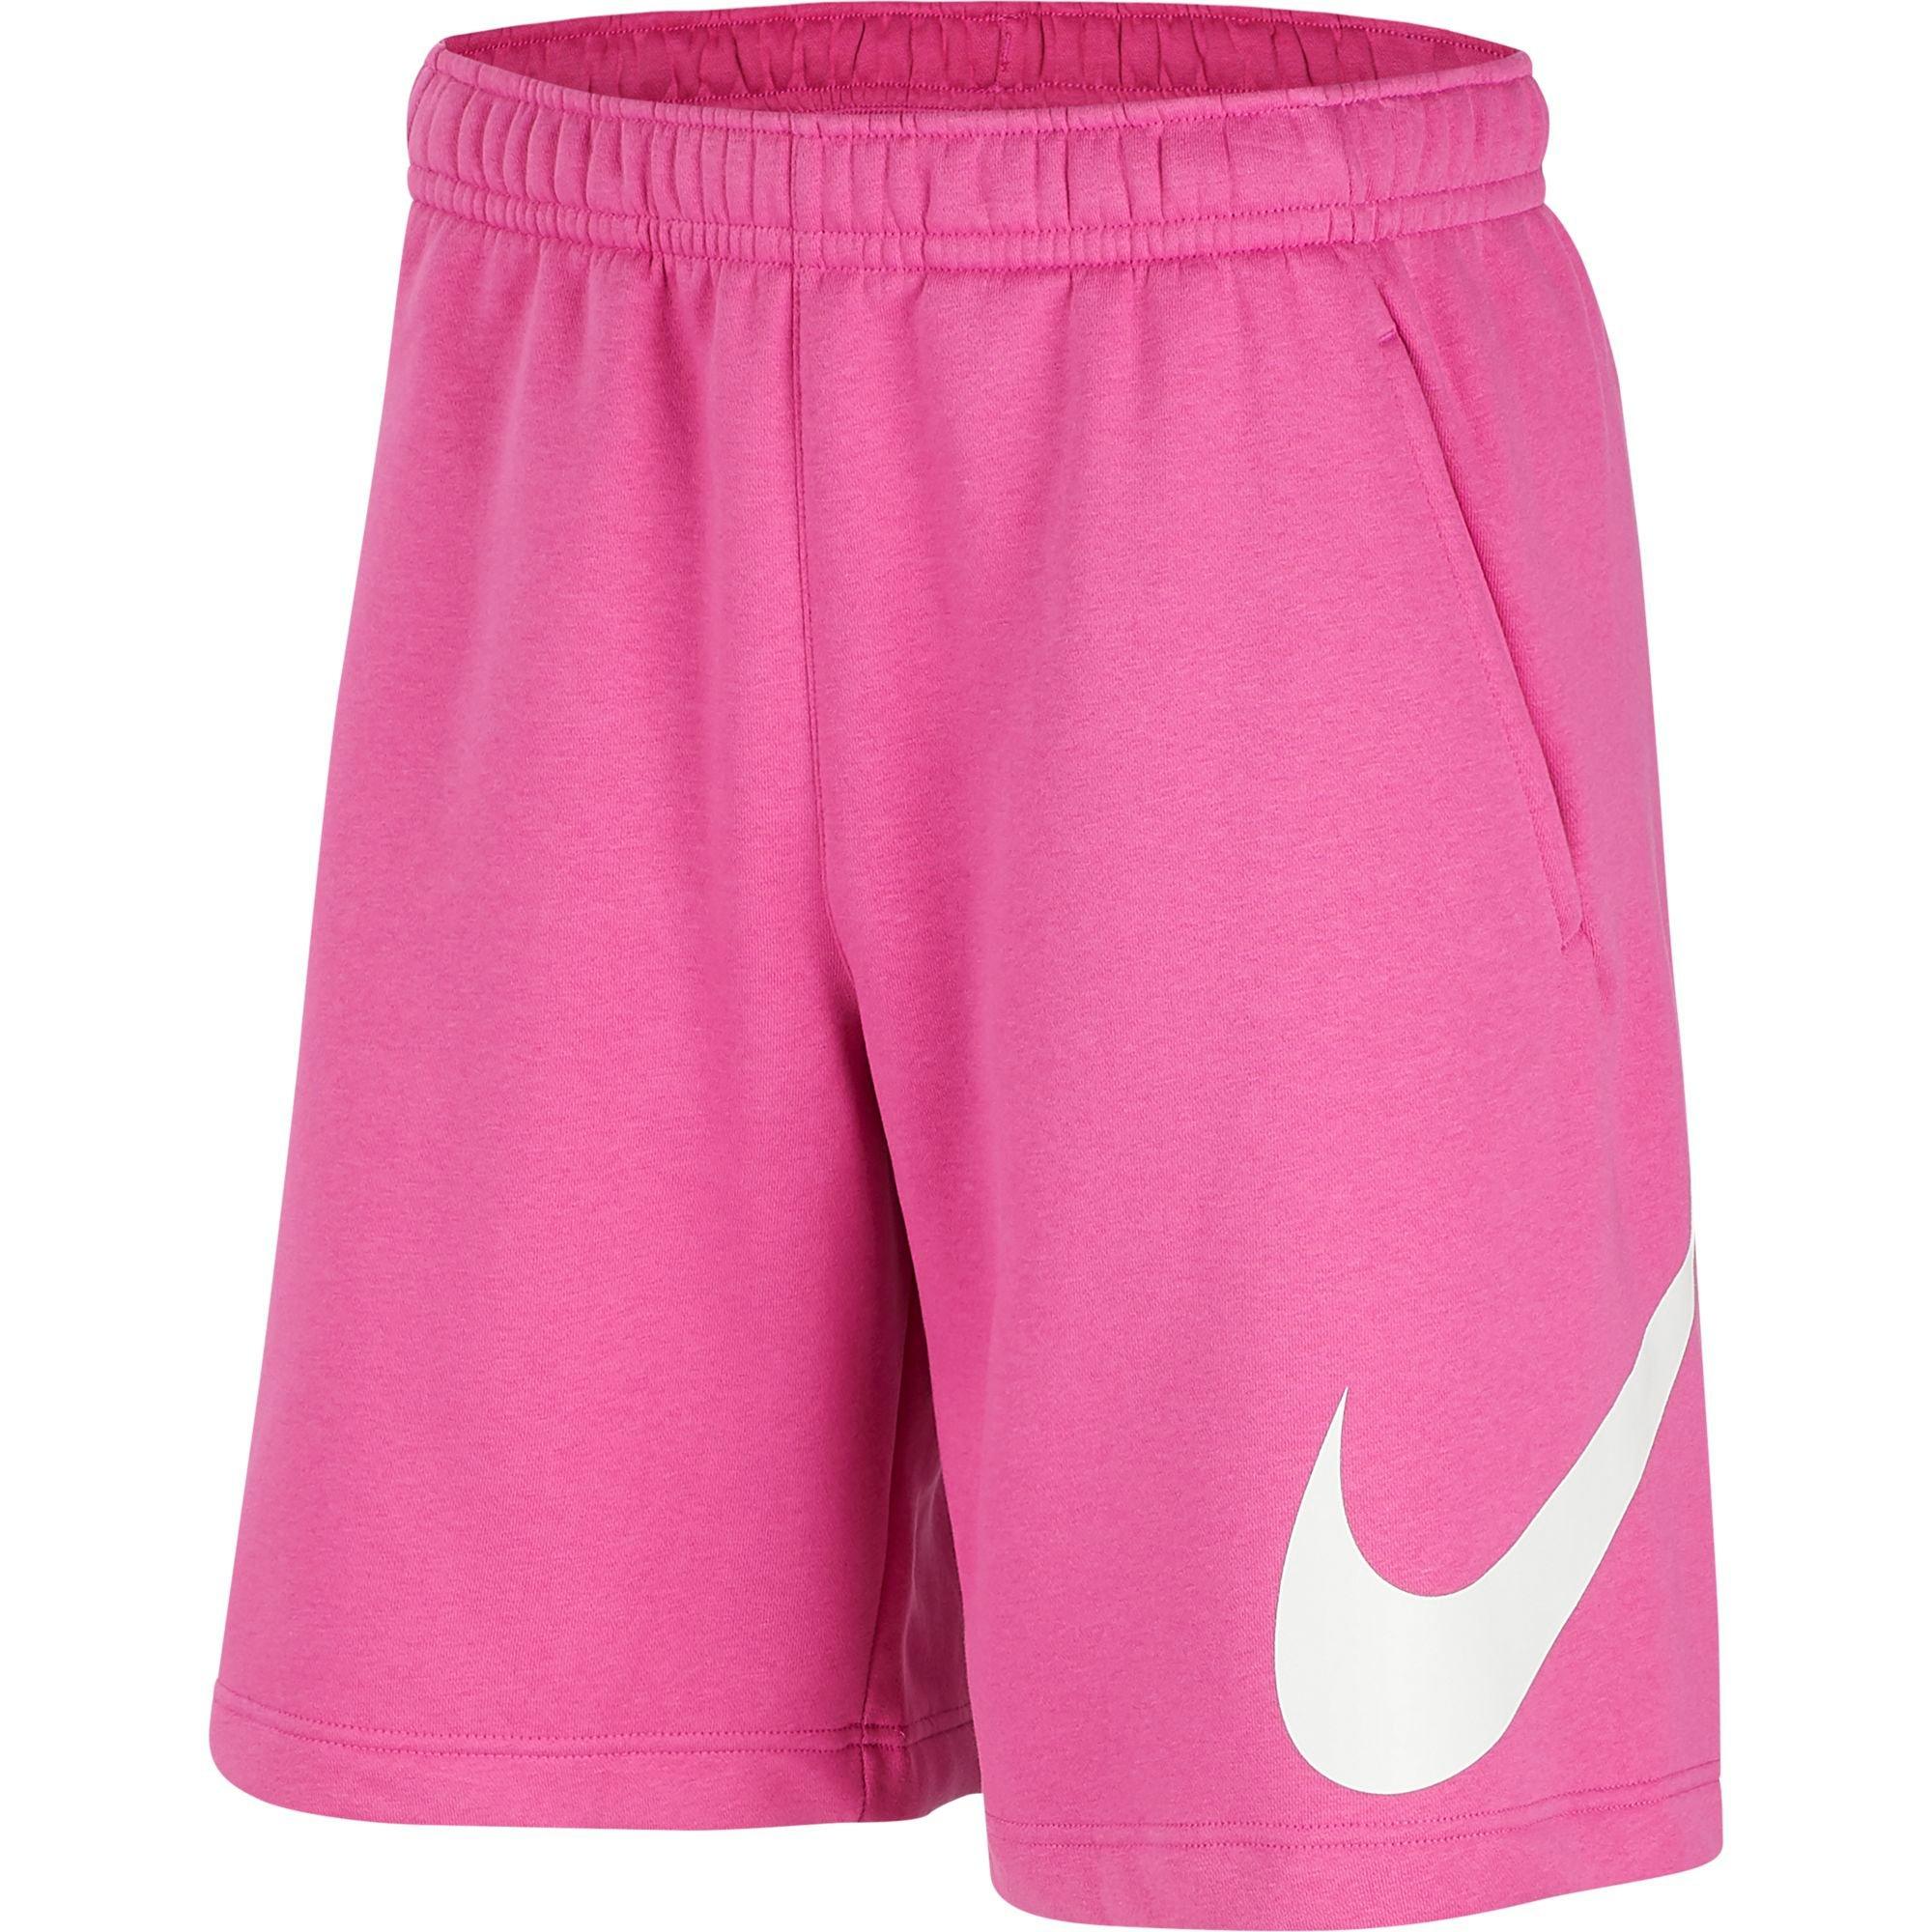 nike shorts men pink